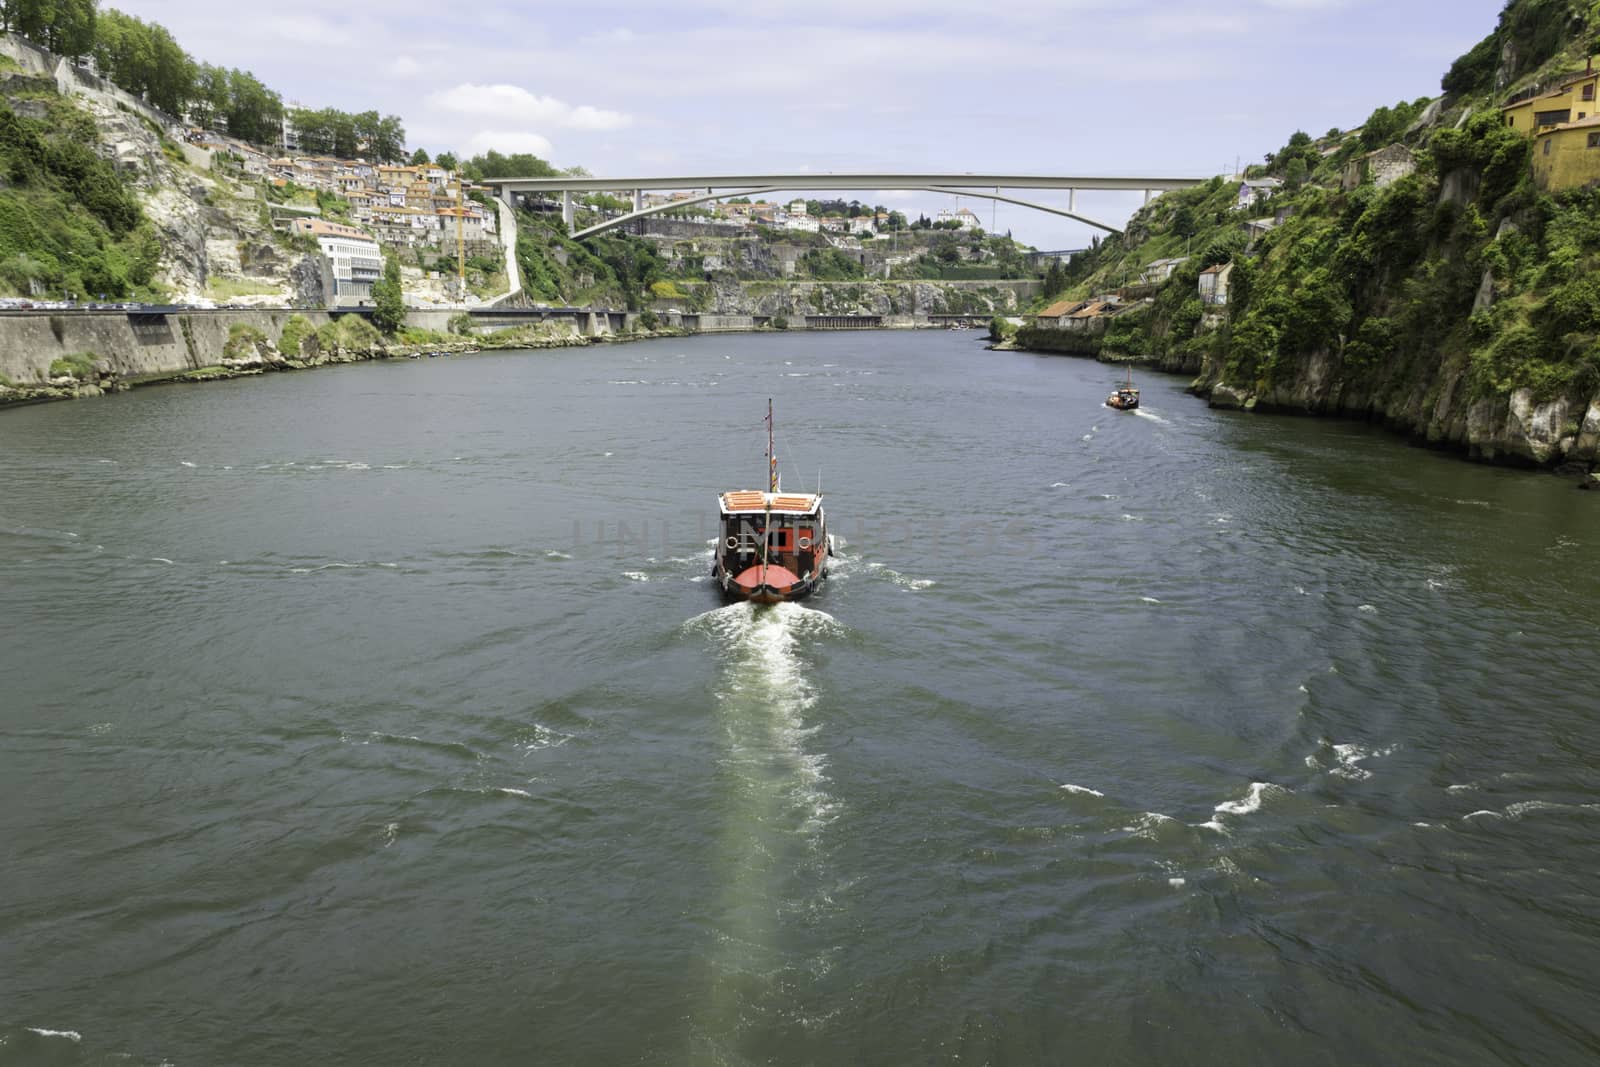 A view of Ancient city Porto, Infante Bridge, Douro River, boat